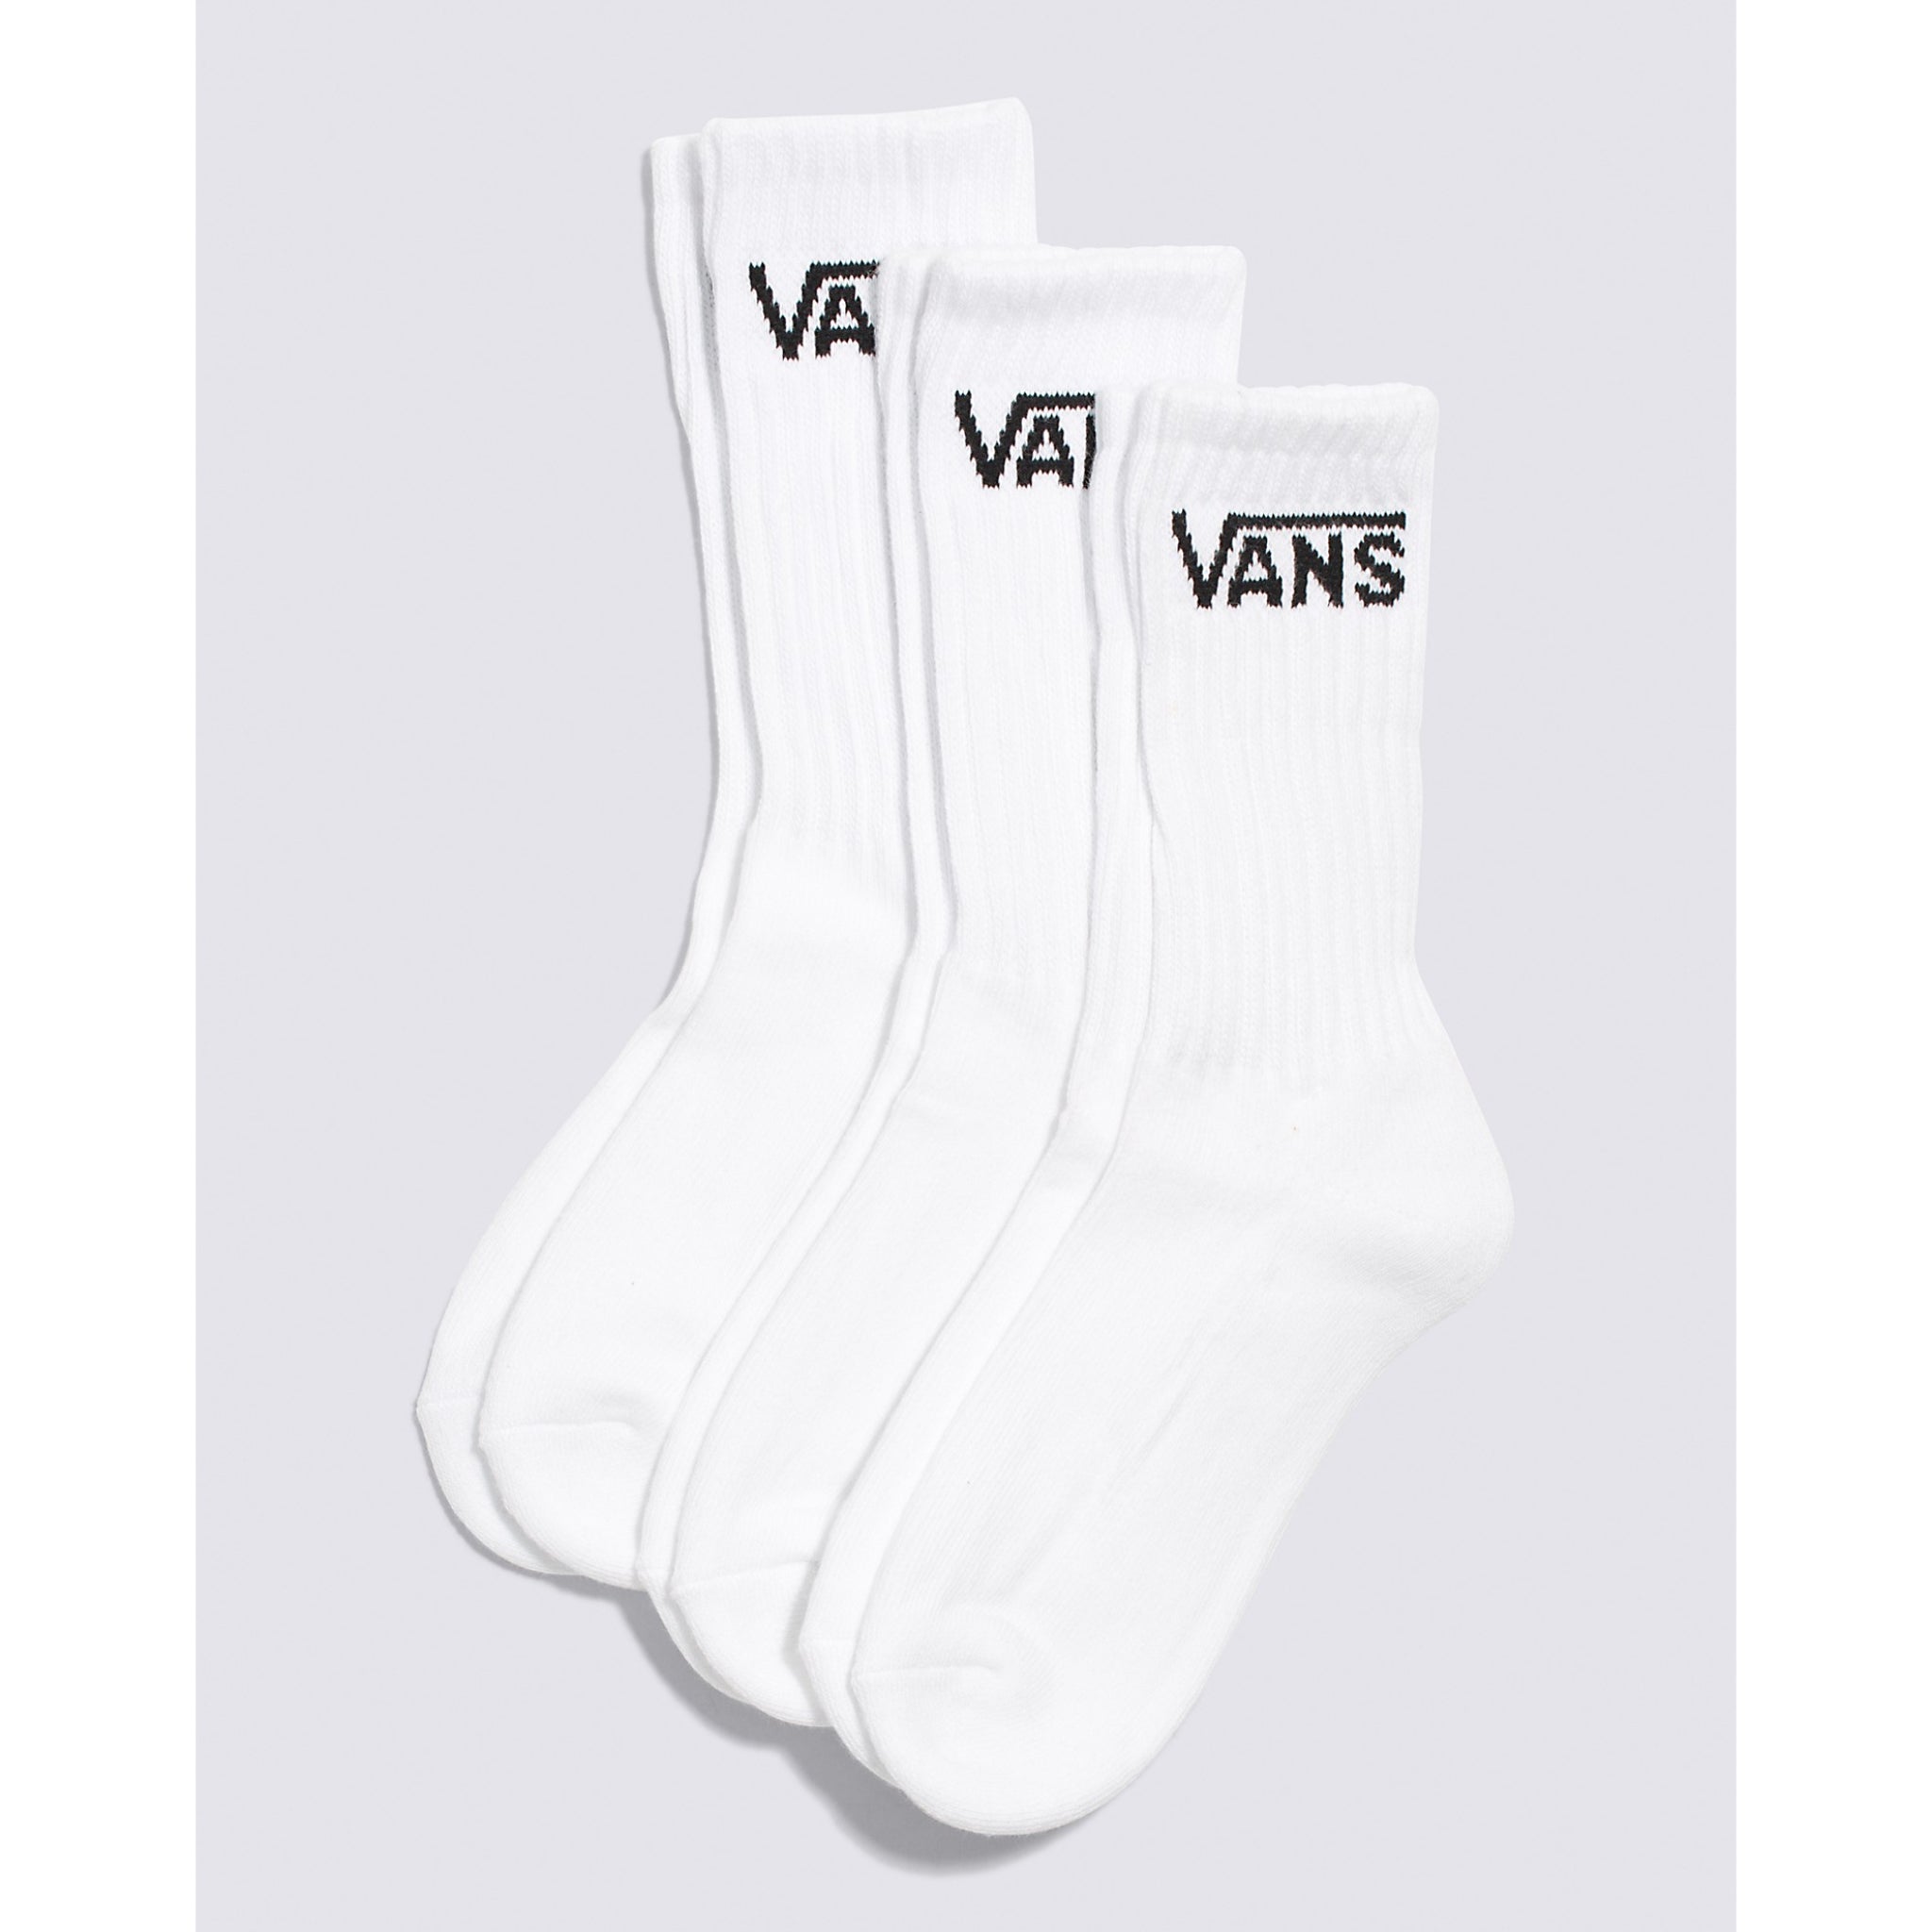 Vans Boys Crew Sock 3 PK Size 10-13